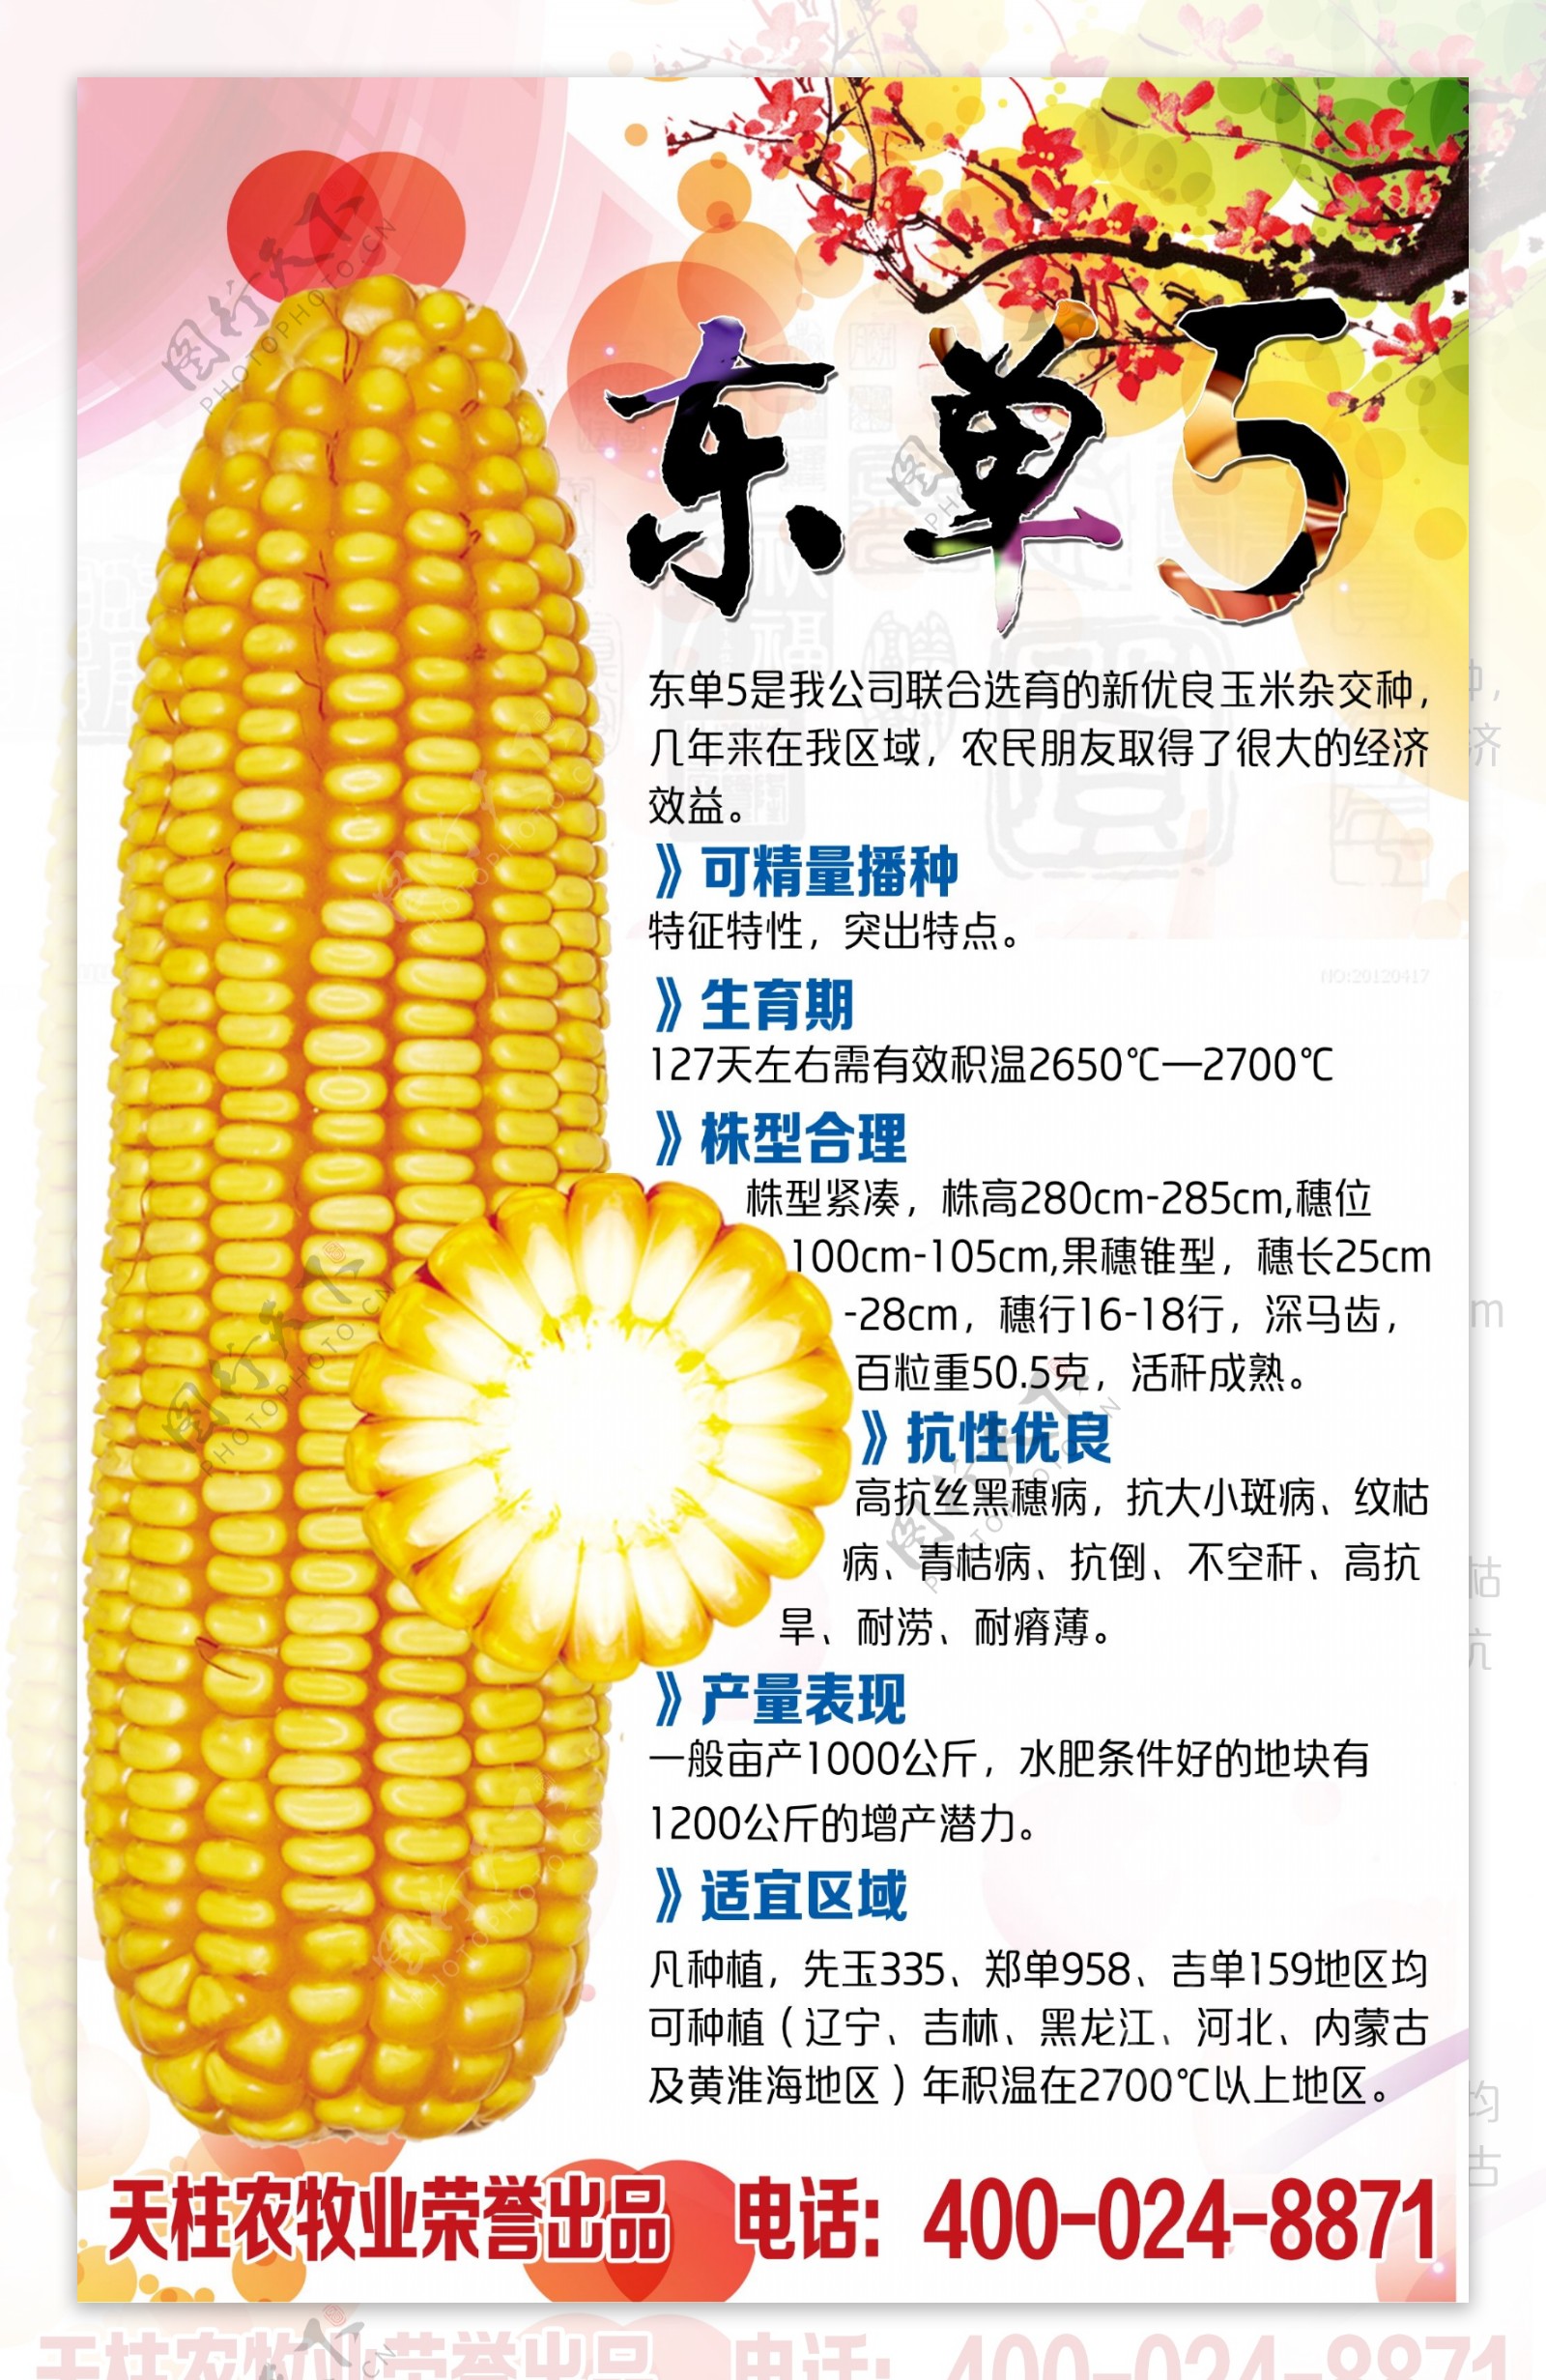 伟育618玉米品种简介-图库-五毛网